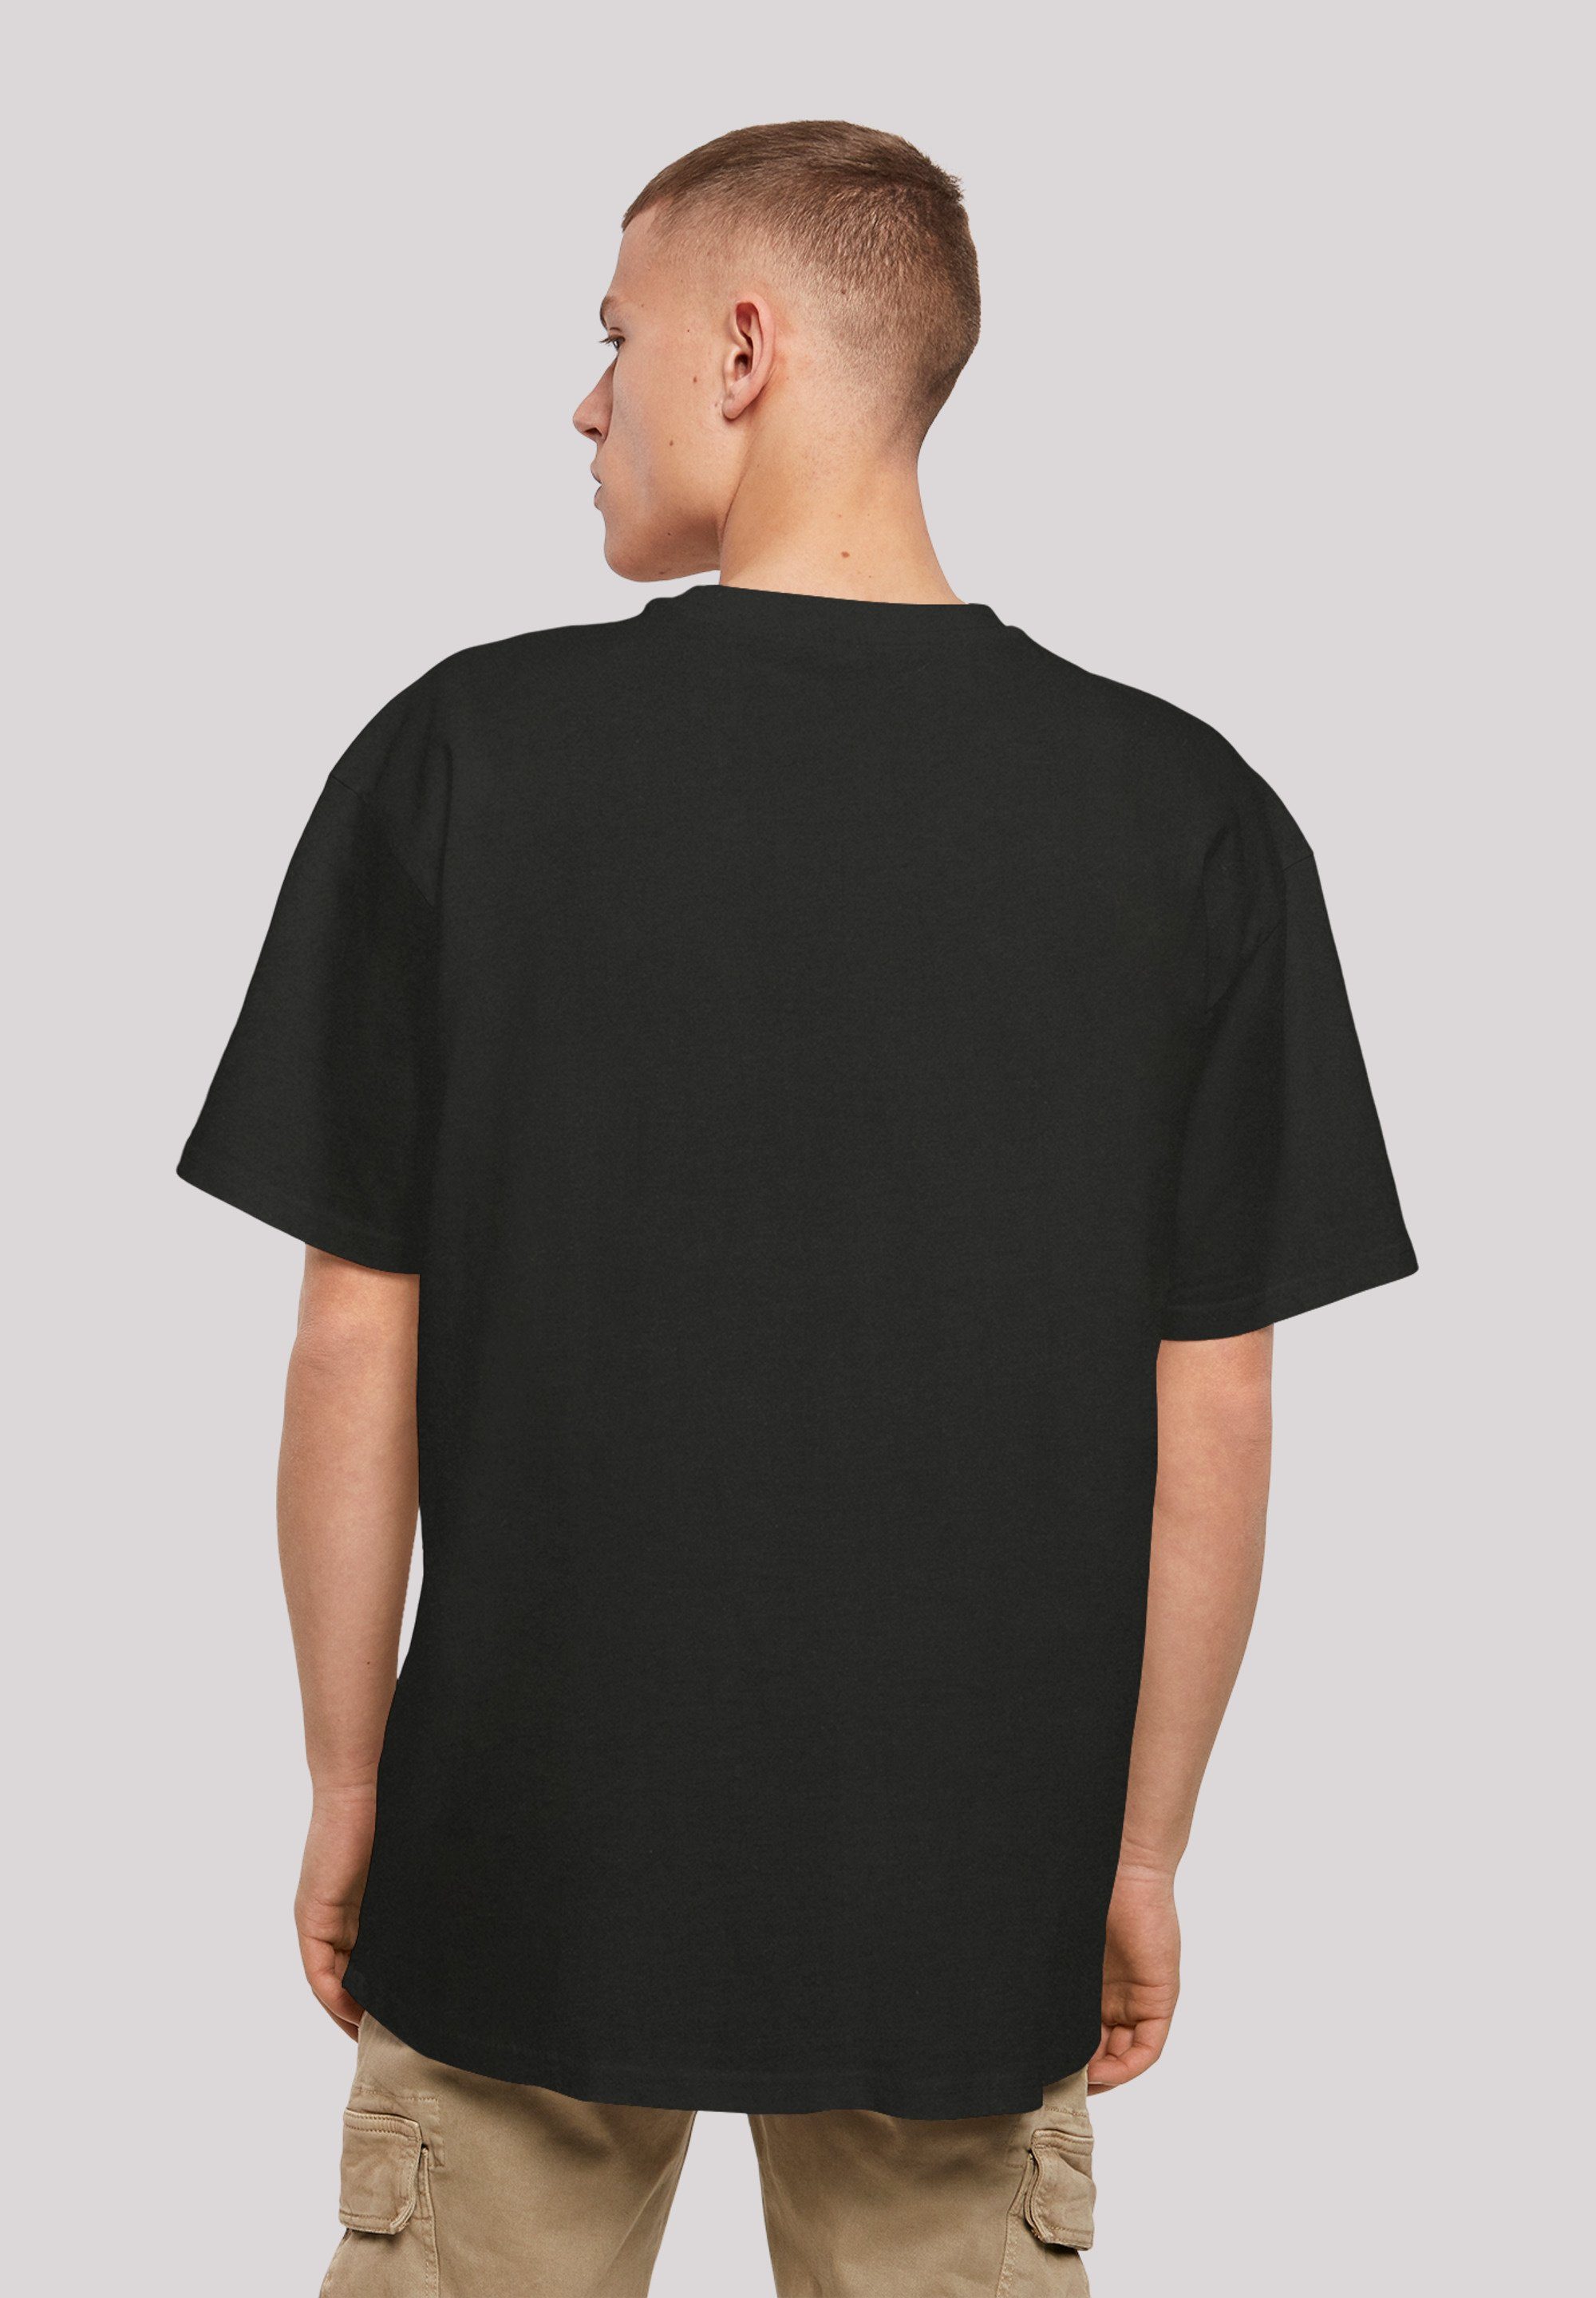 Praying T-Shirt F4NT4STIC Tupac Shakur Print